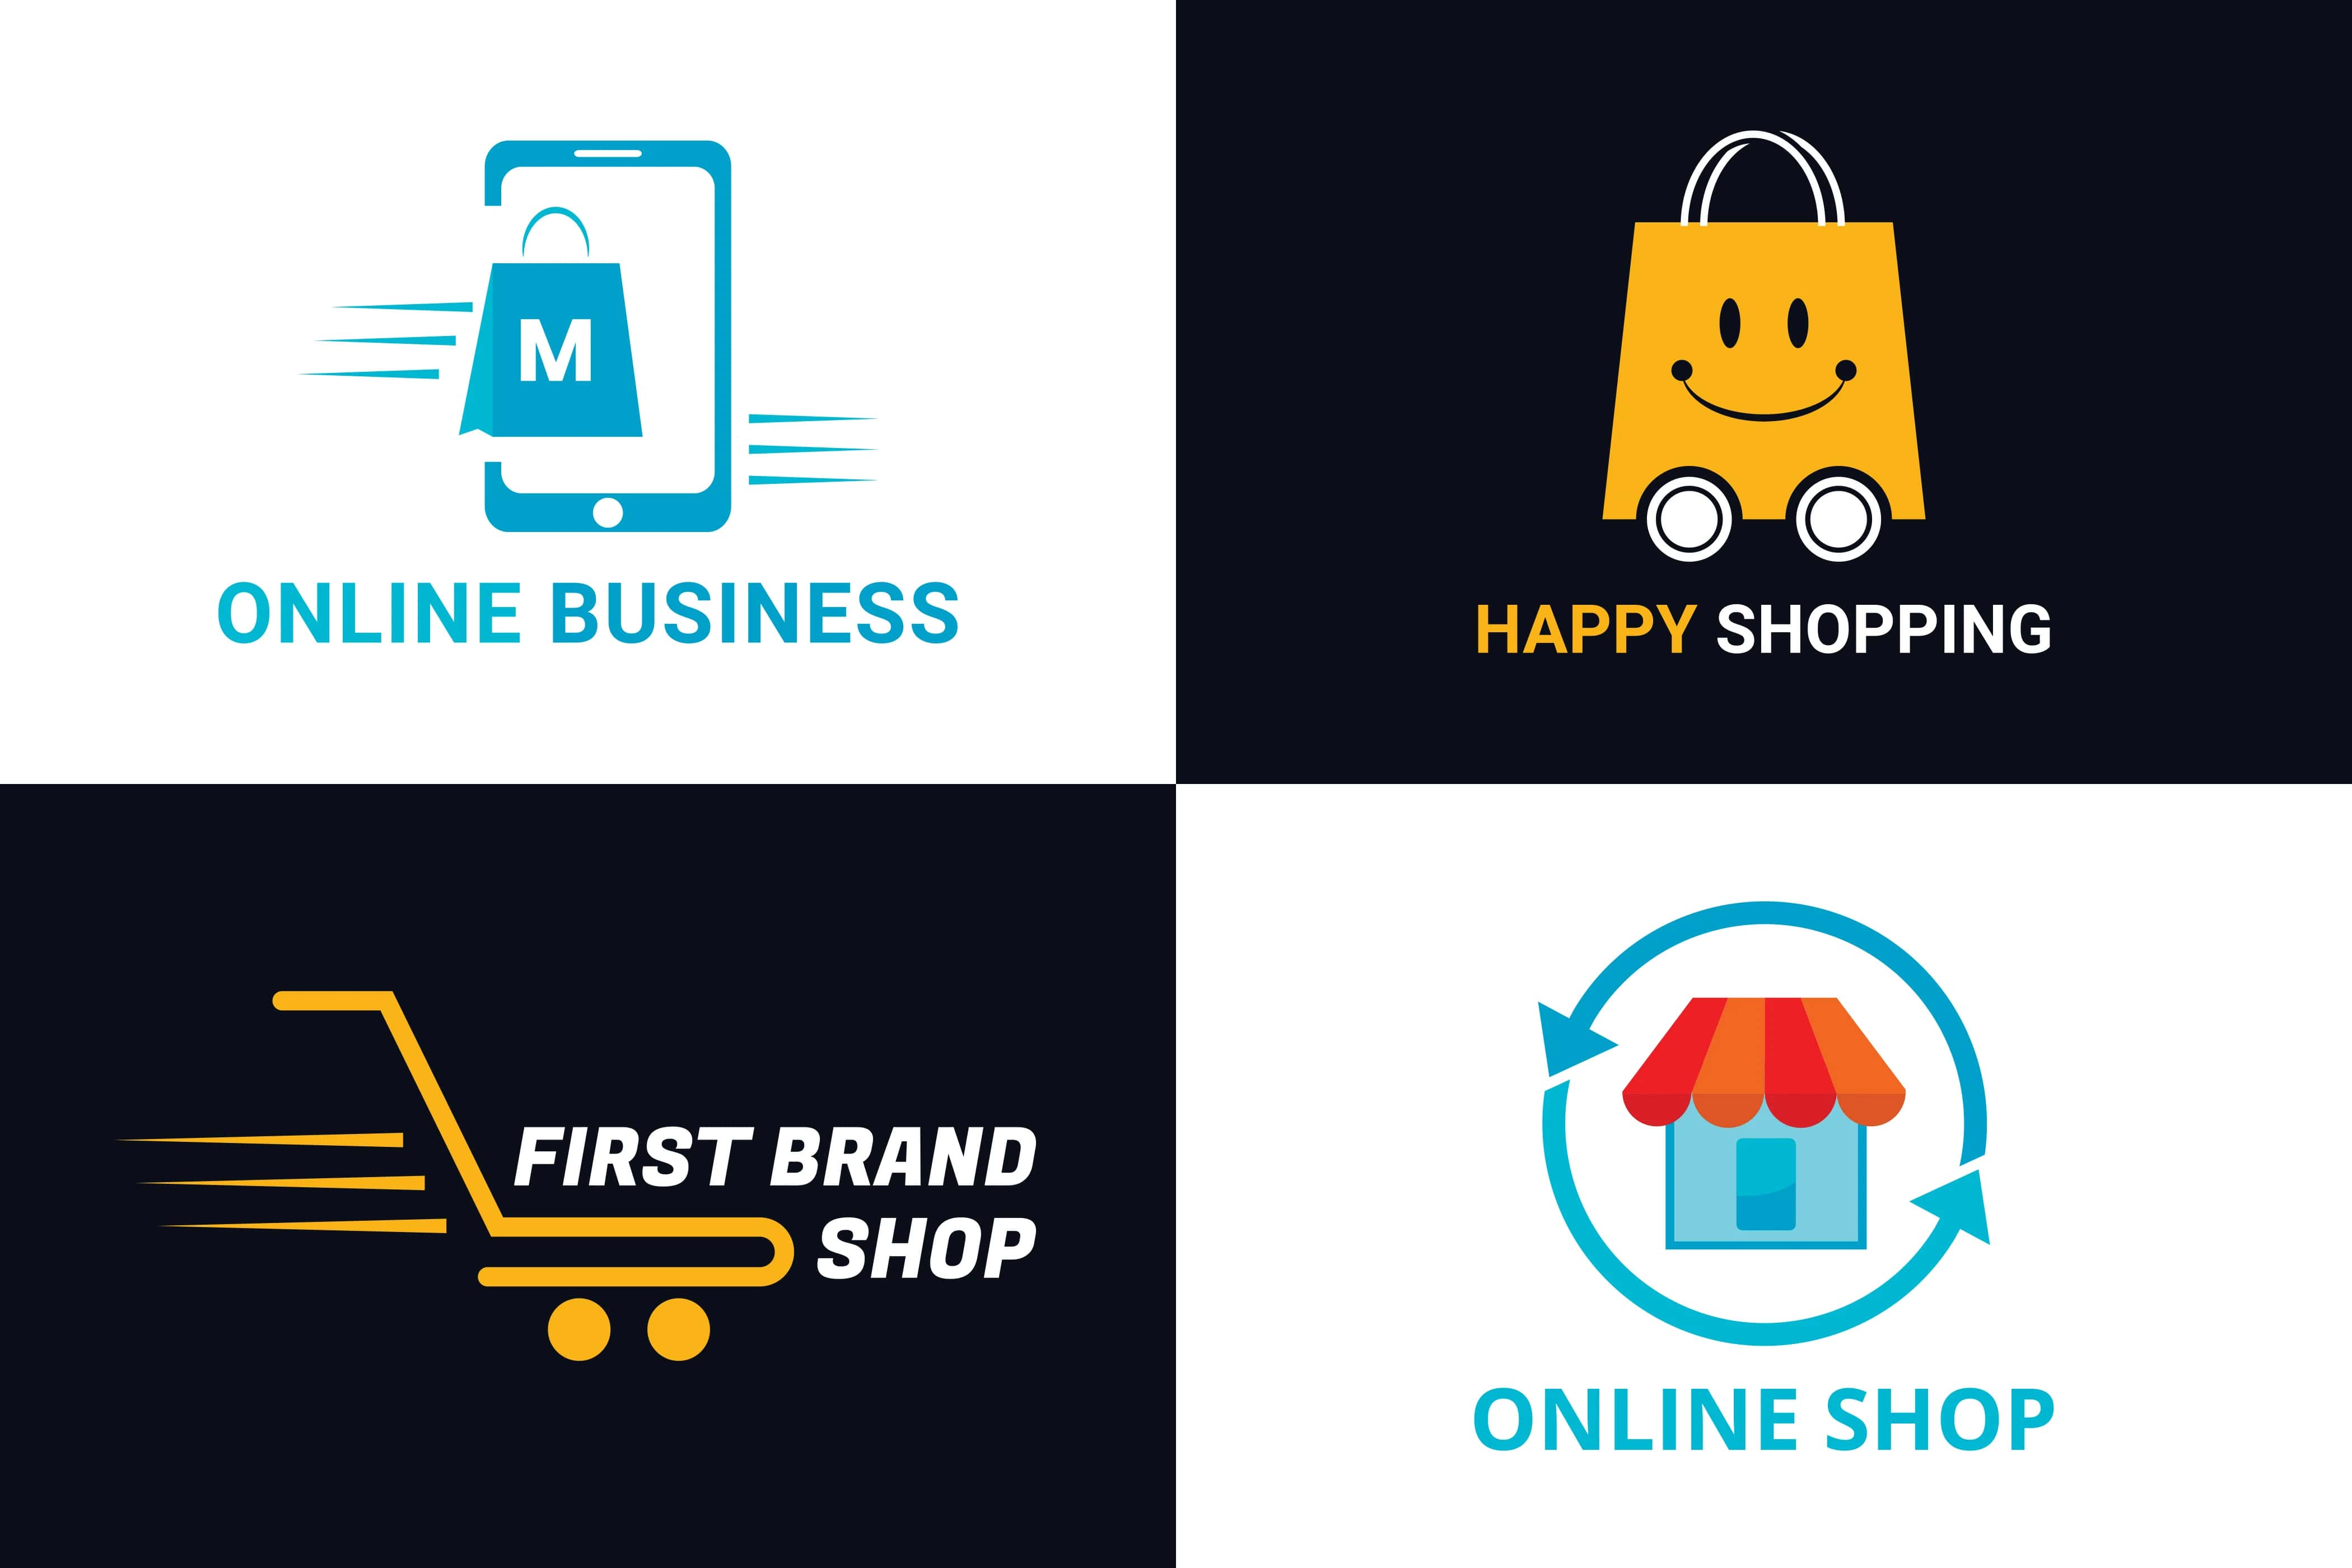 Tổng hợp Mẫu logo bán hàng online đẹp Theo nhiều chủ đề khác nhau